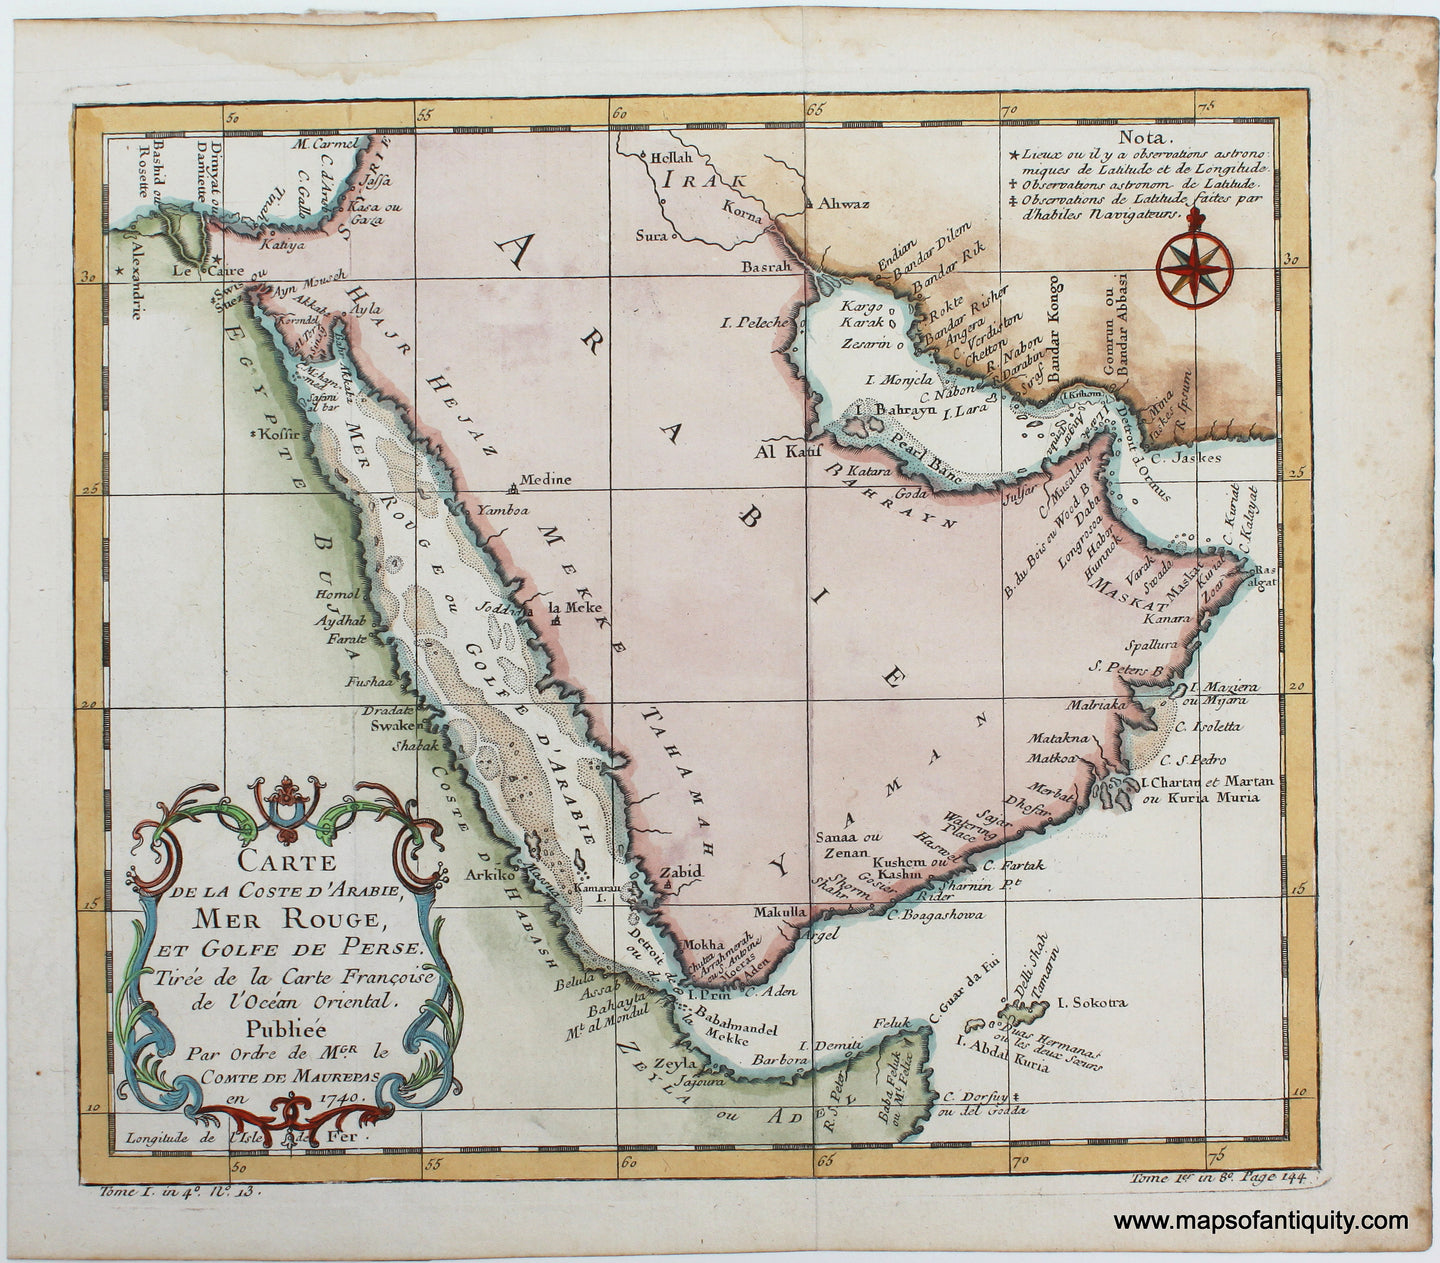 Antique-hand-colored-Engraved-Map-Carte-de-La-Coste-D'Arabie-Mer-Rouge-et-Golfe-de-Perse-Middle-East-Arabian Peninsula-1740-Bellin-Maps-Of-Antiquity